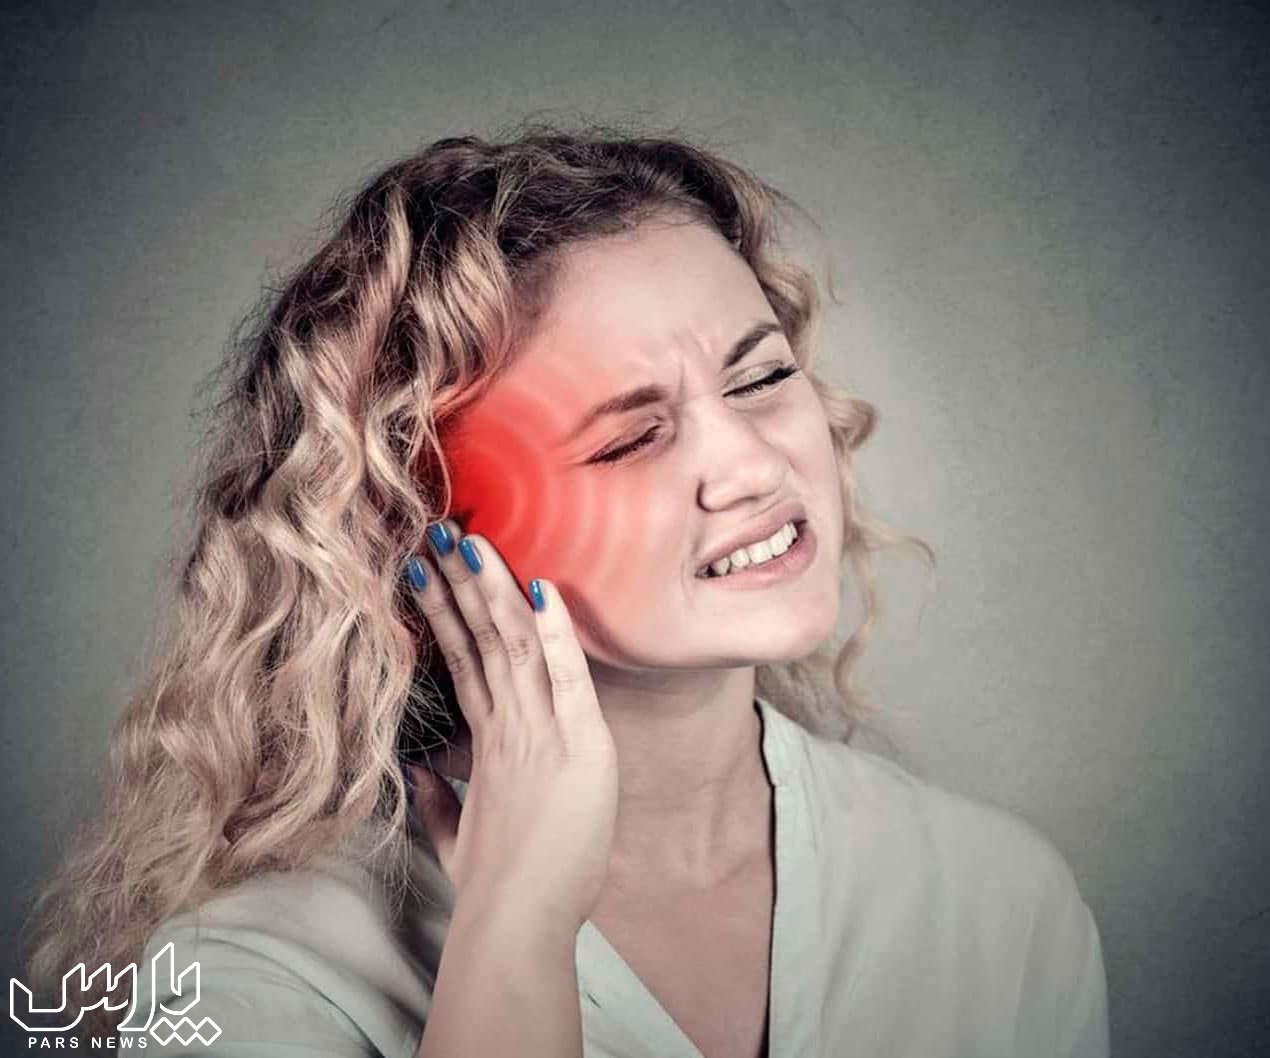 گوش درد - علت سوت کشیدن گوش